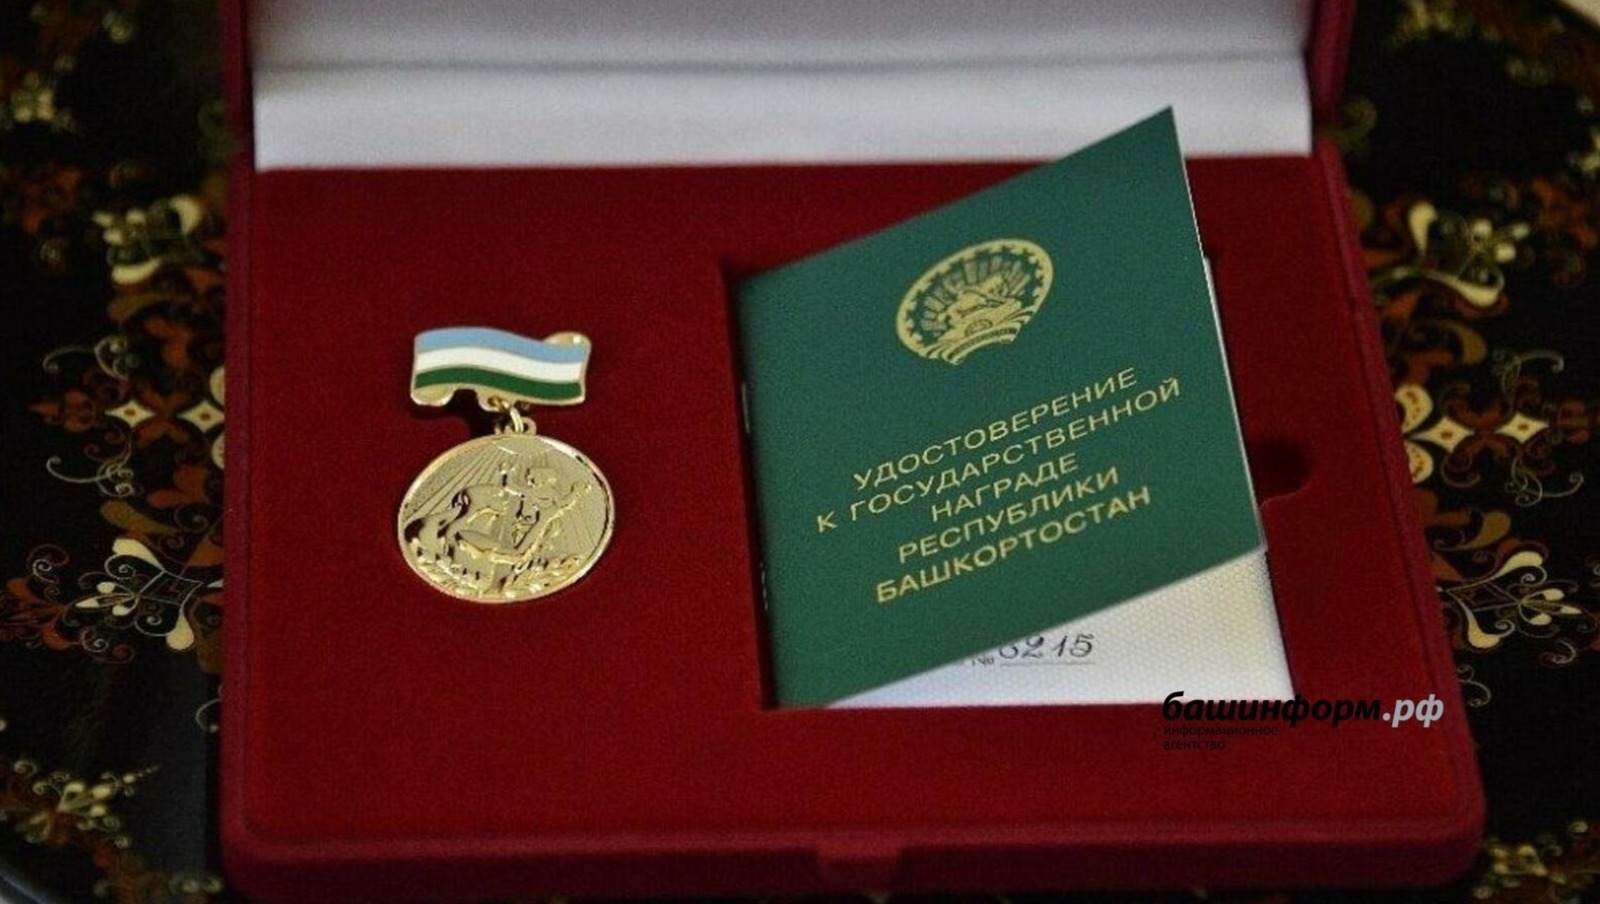 Очередные медали «Материнская слава» украсят женщин Башкирии